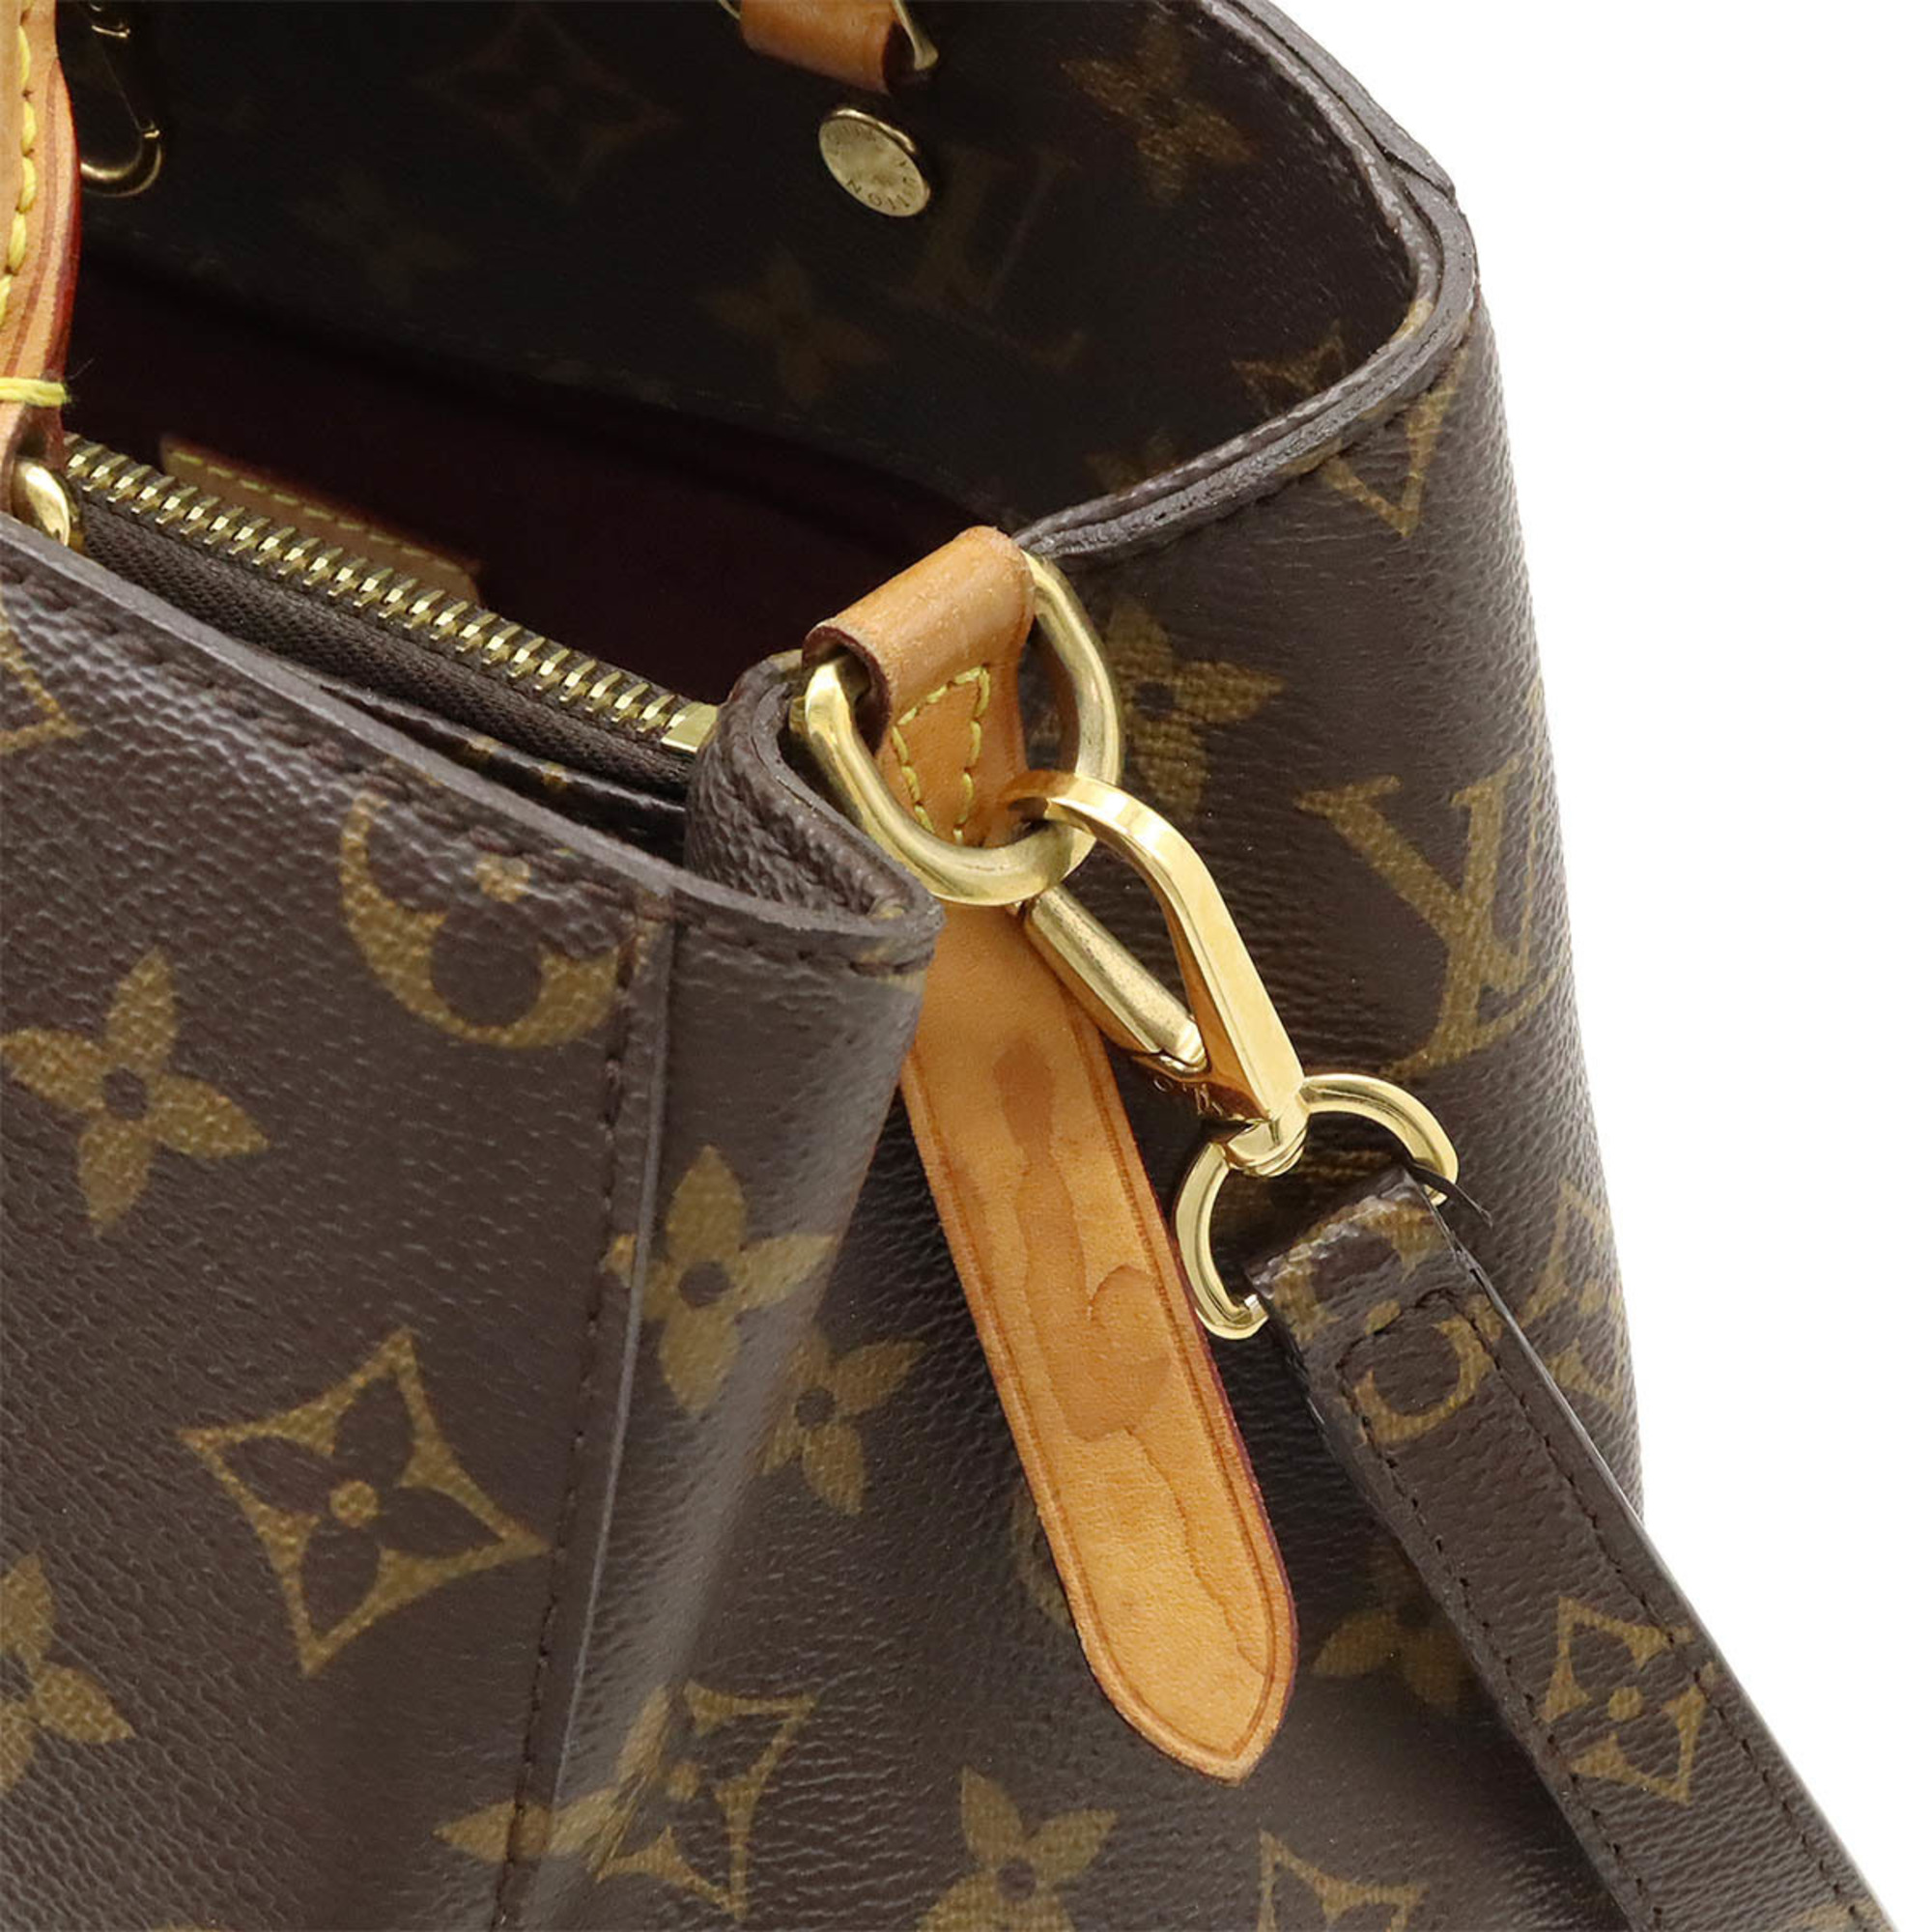 LOUIS VUITTON Louis Vuitton Monogram Montaigne MM Handbag Shoulder Bag M41056